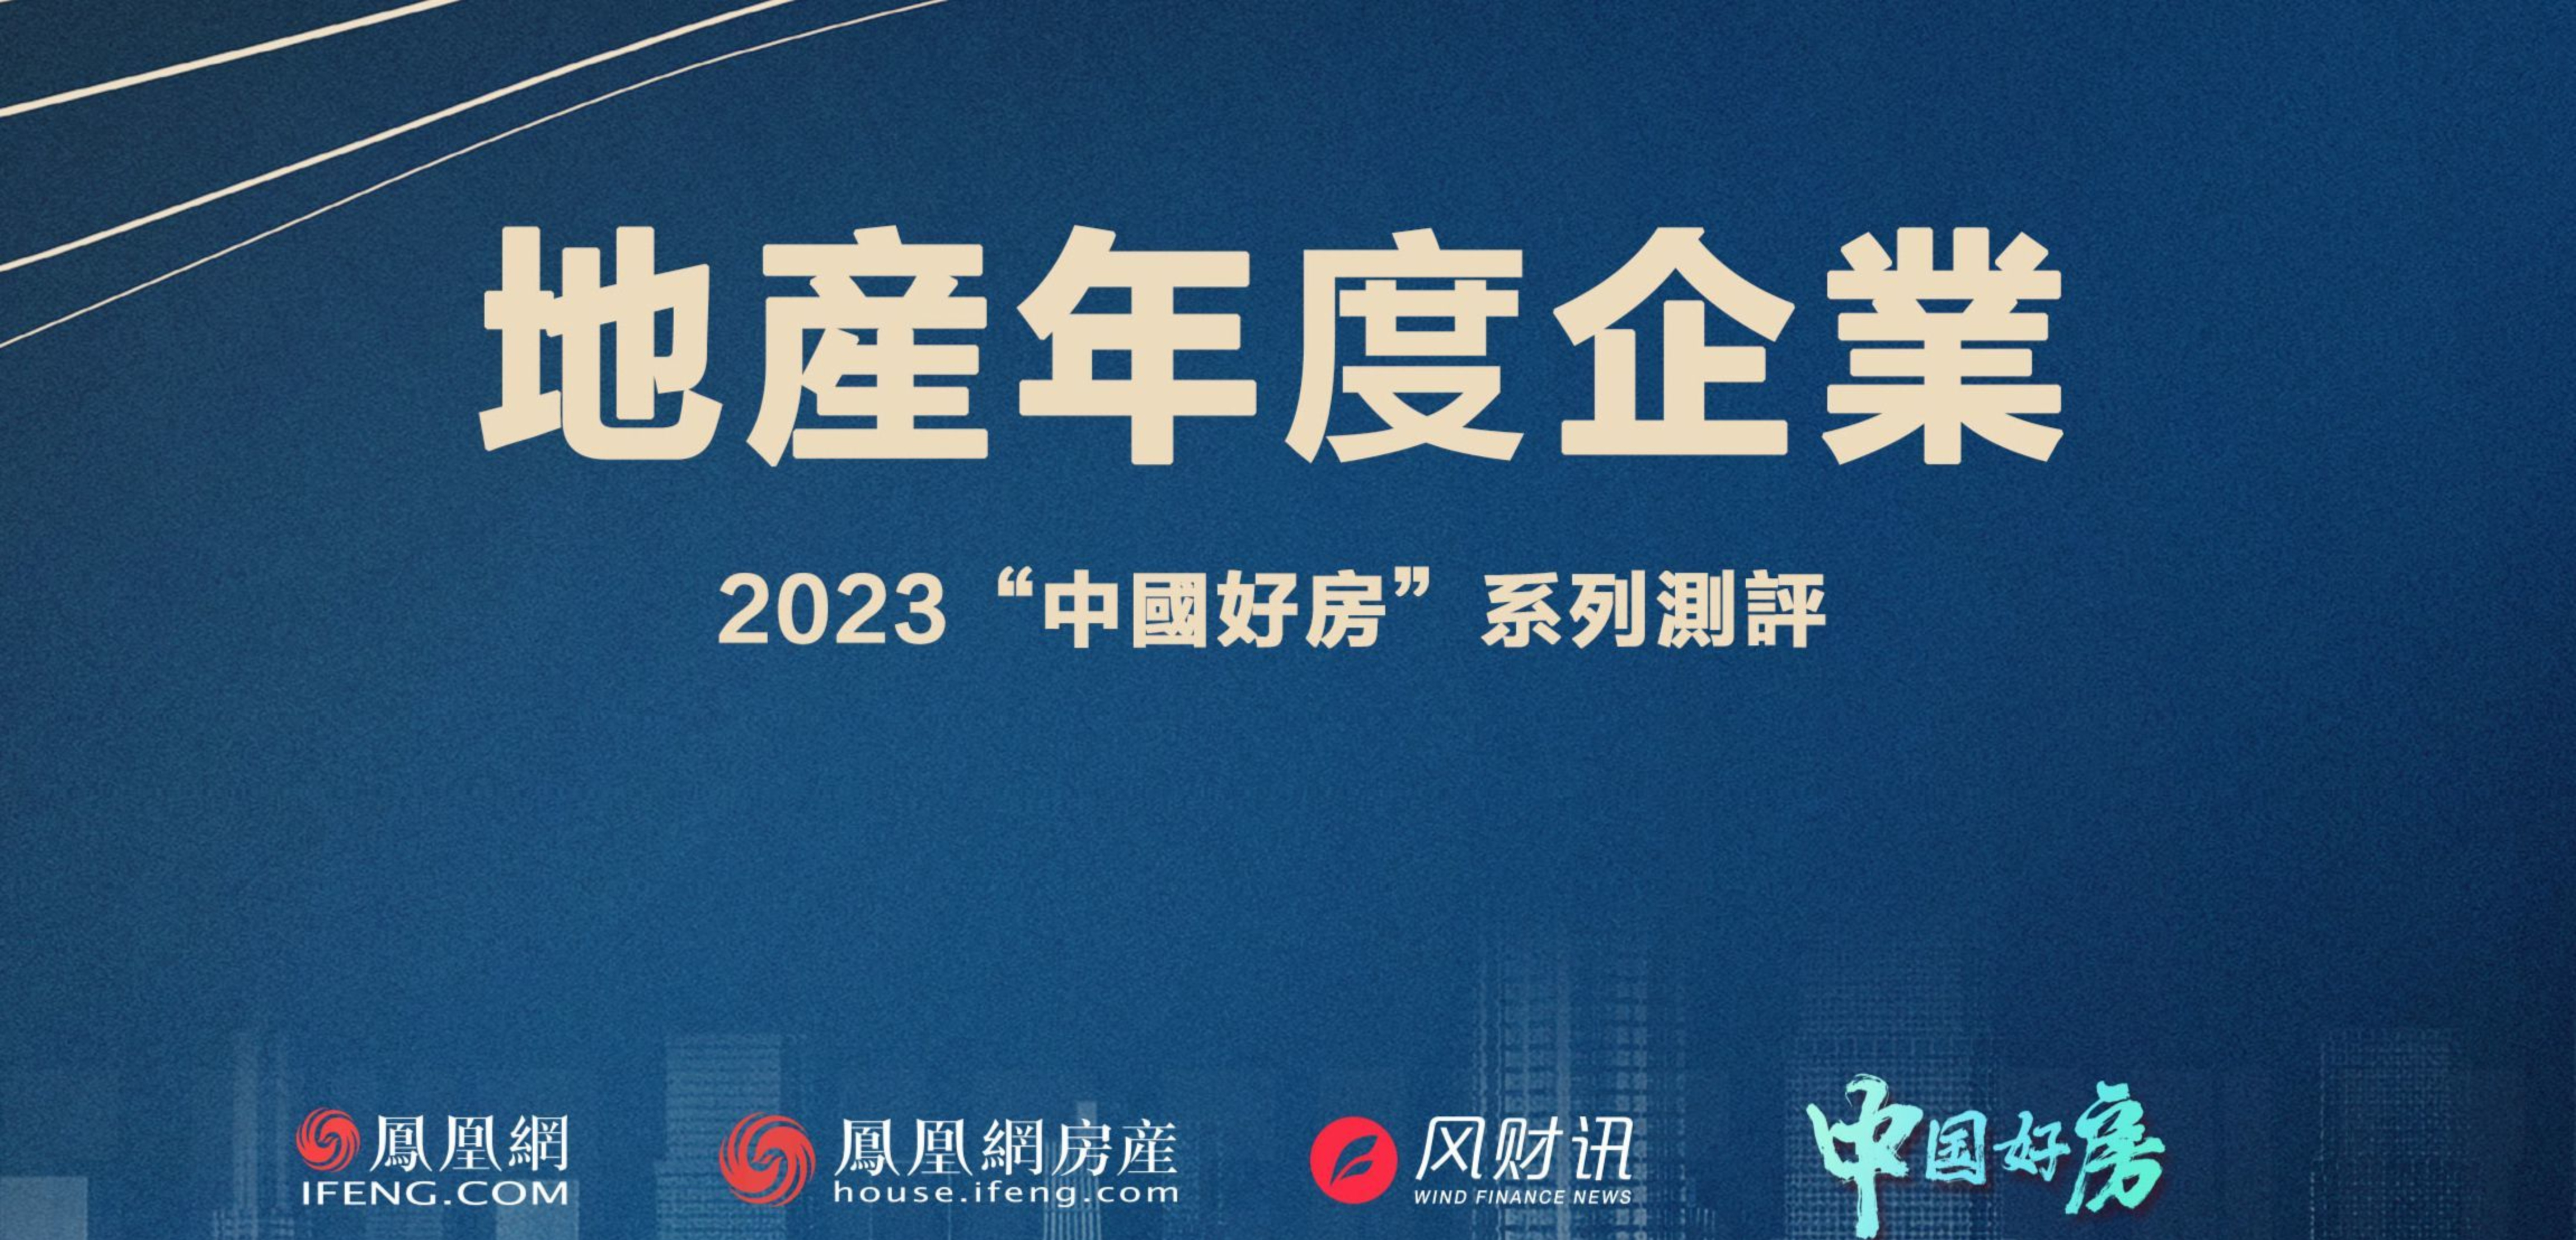 《中国好房·2023地产年度企业》>>点击进入